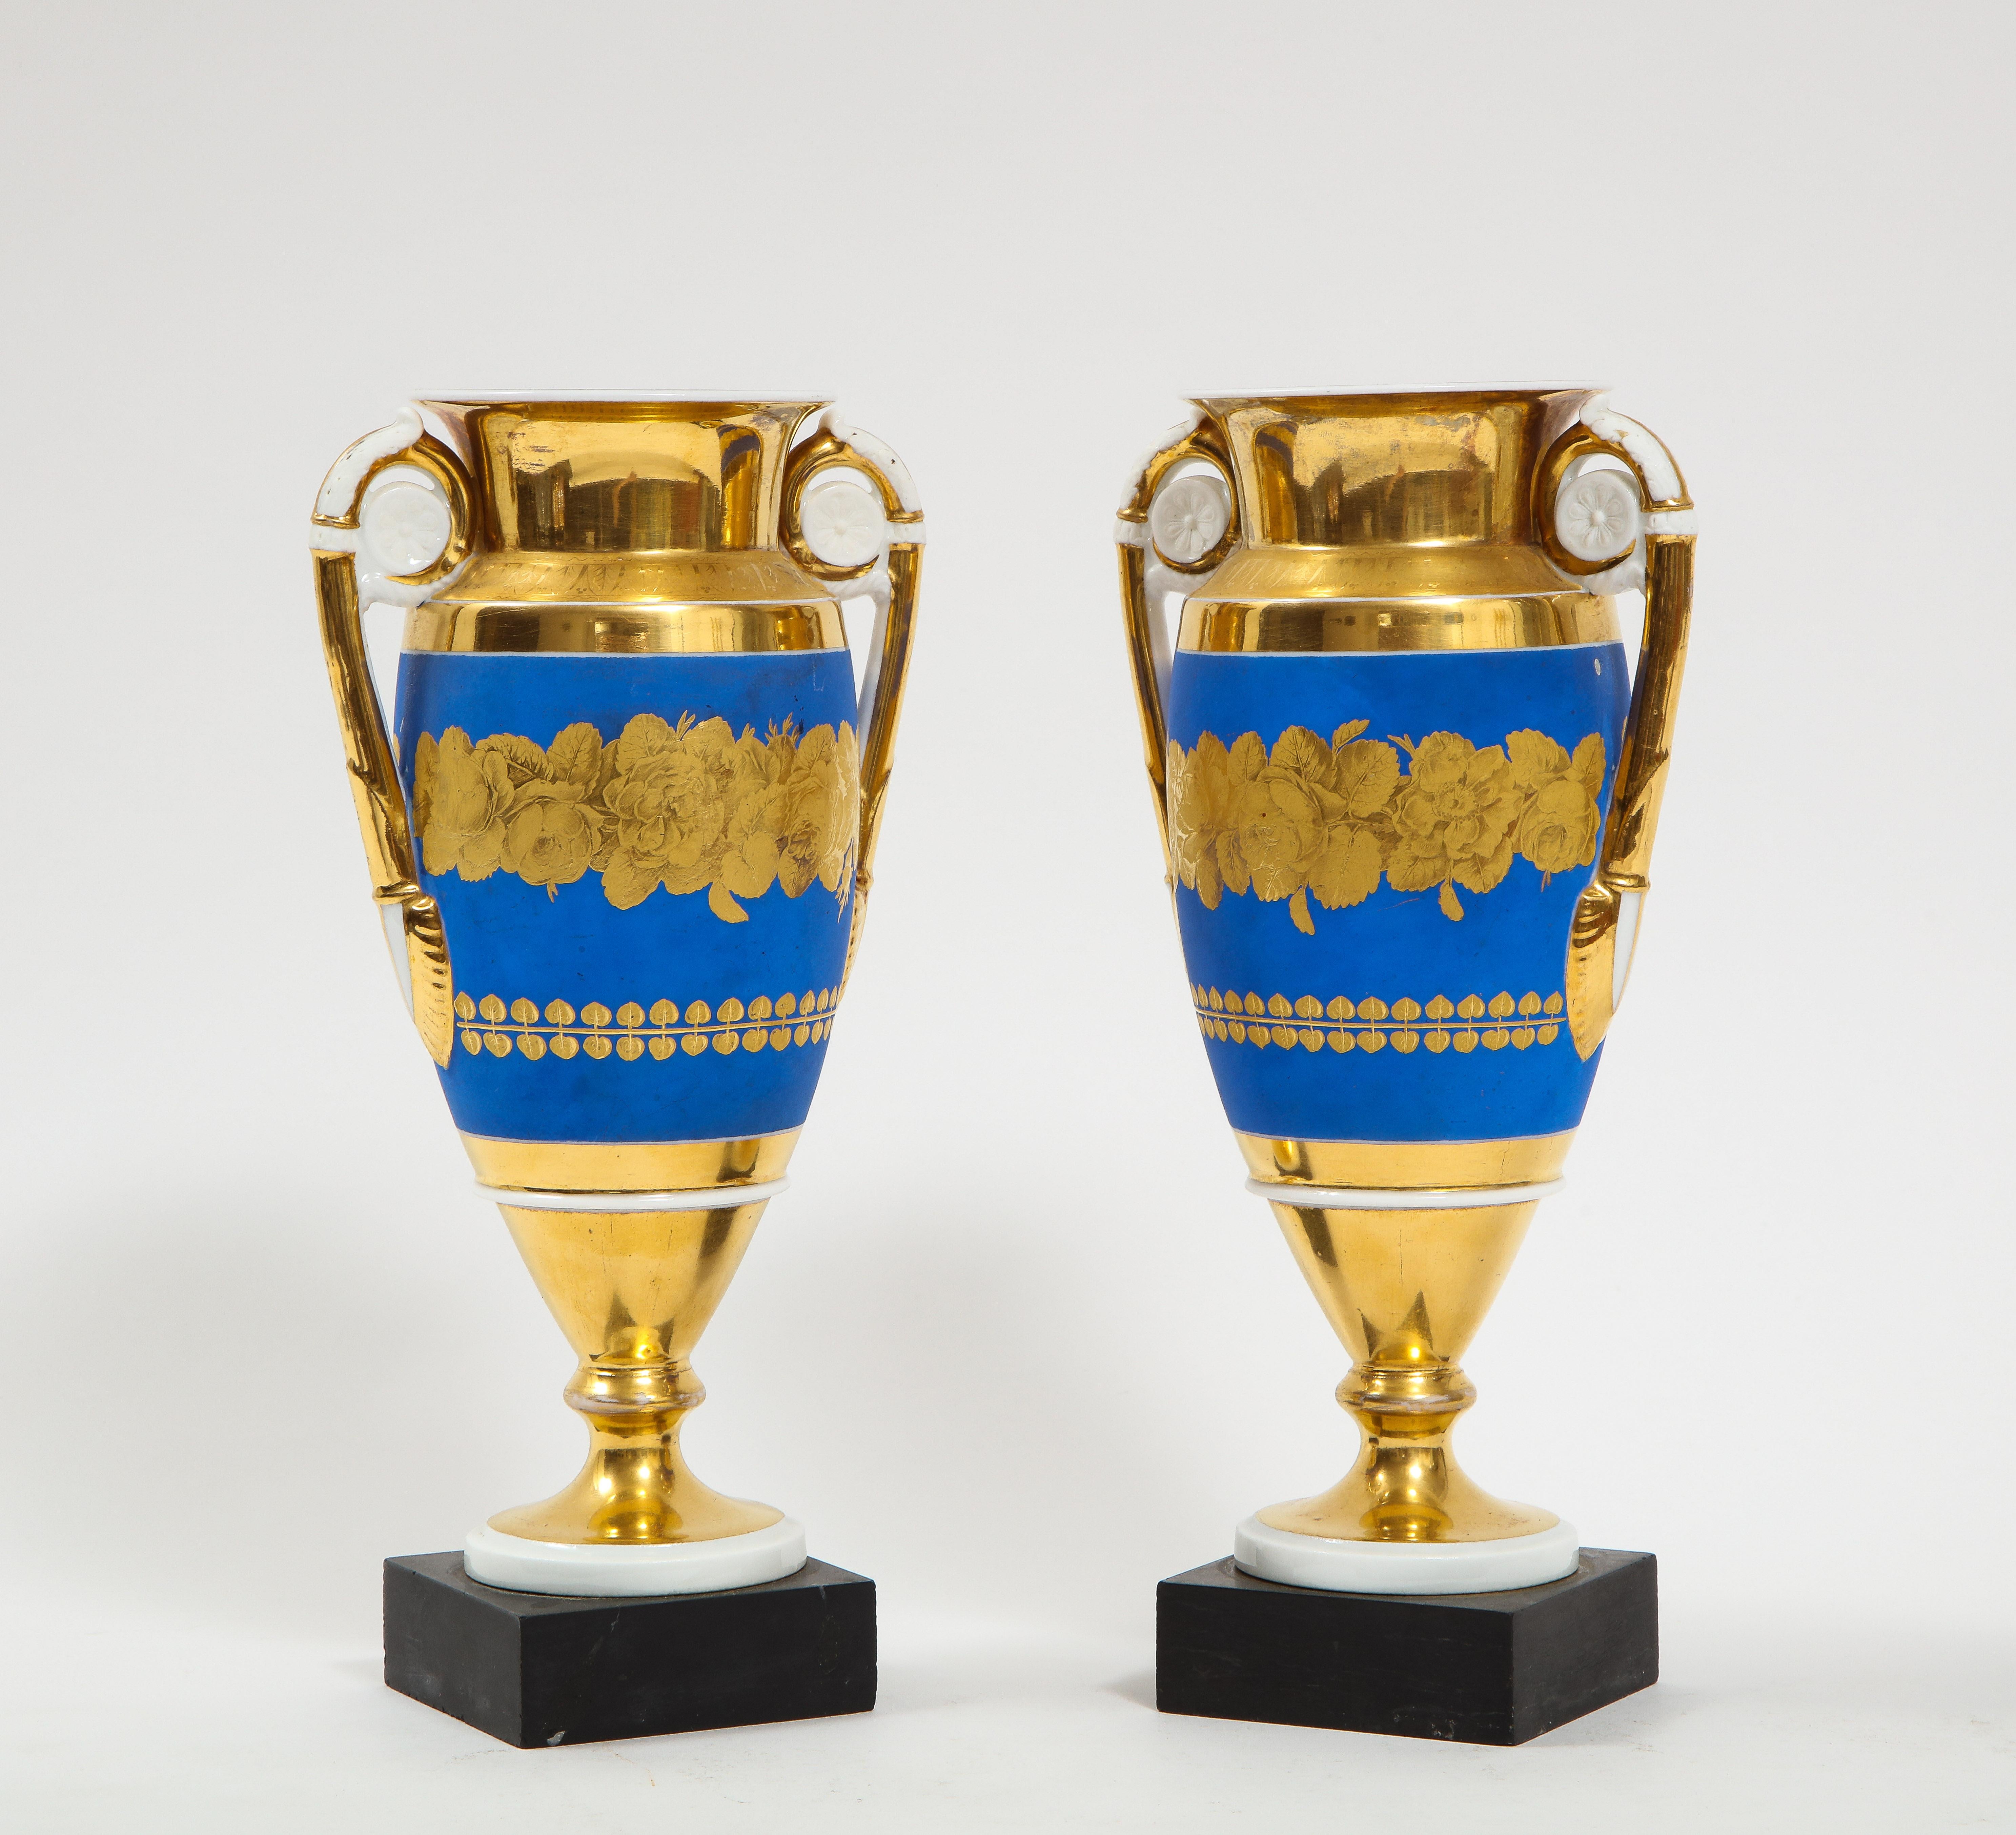 Magnifique paire de vases Empire du 19e siècle en porcelaine à fond bleu et or bicolore avec des poignées en or à médaillon blanc. Chaque pièce est magnifiquement peinte à la main avec un magnifique fond bleu clair et des fleurs bicolores mates et